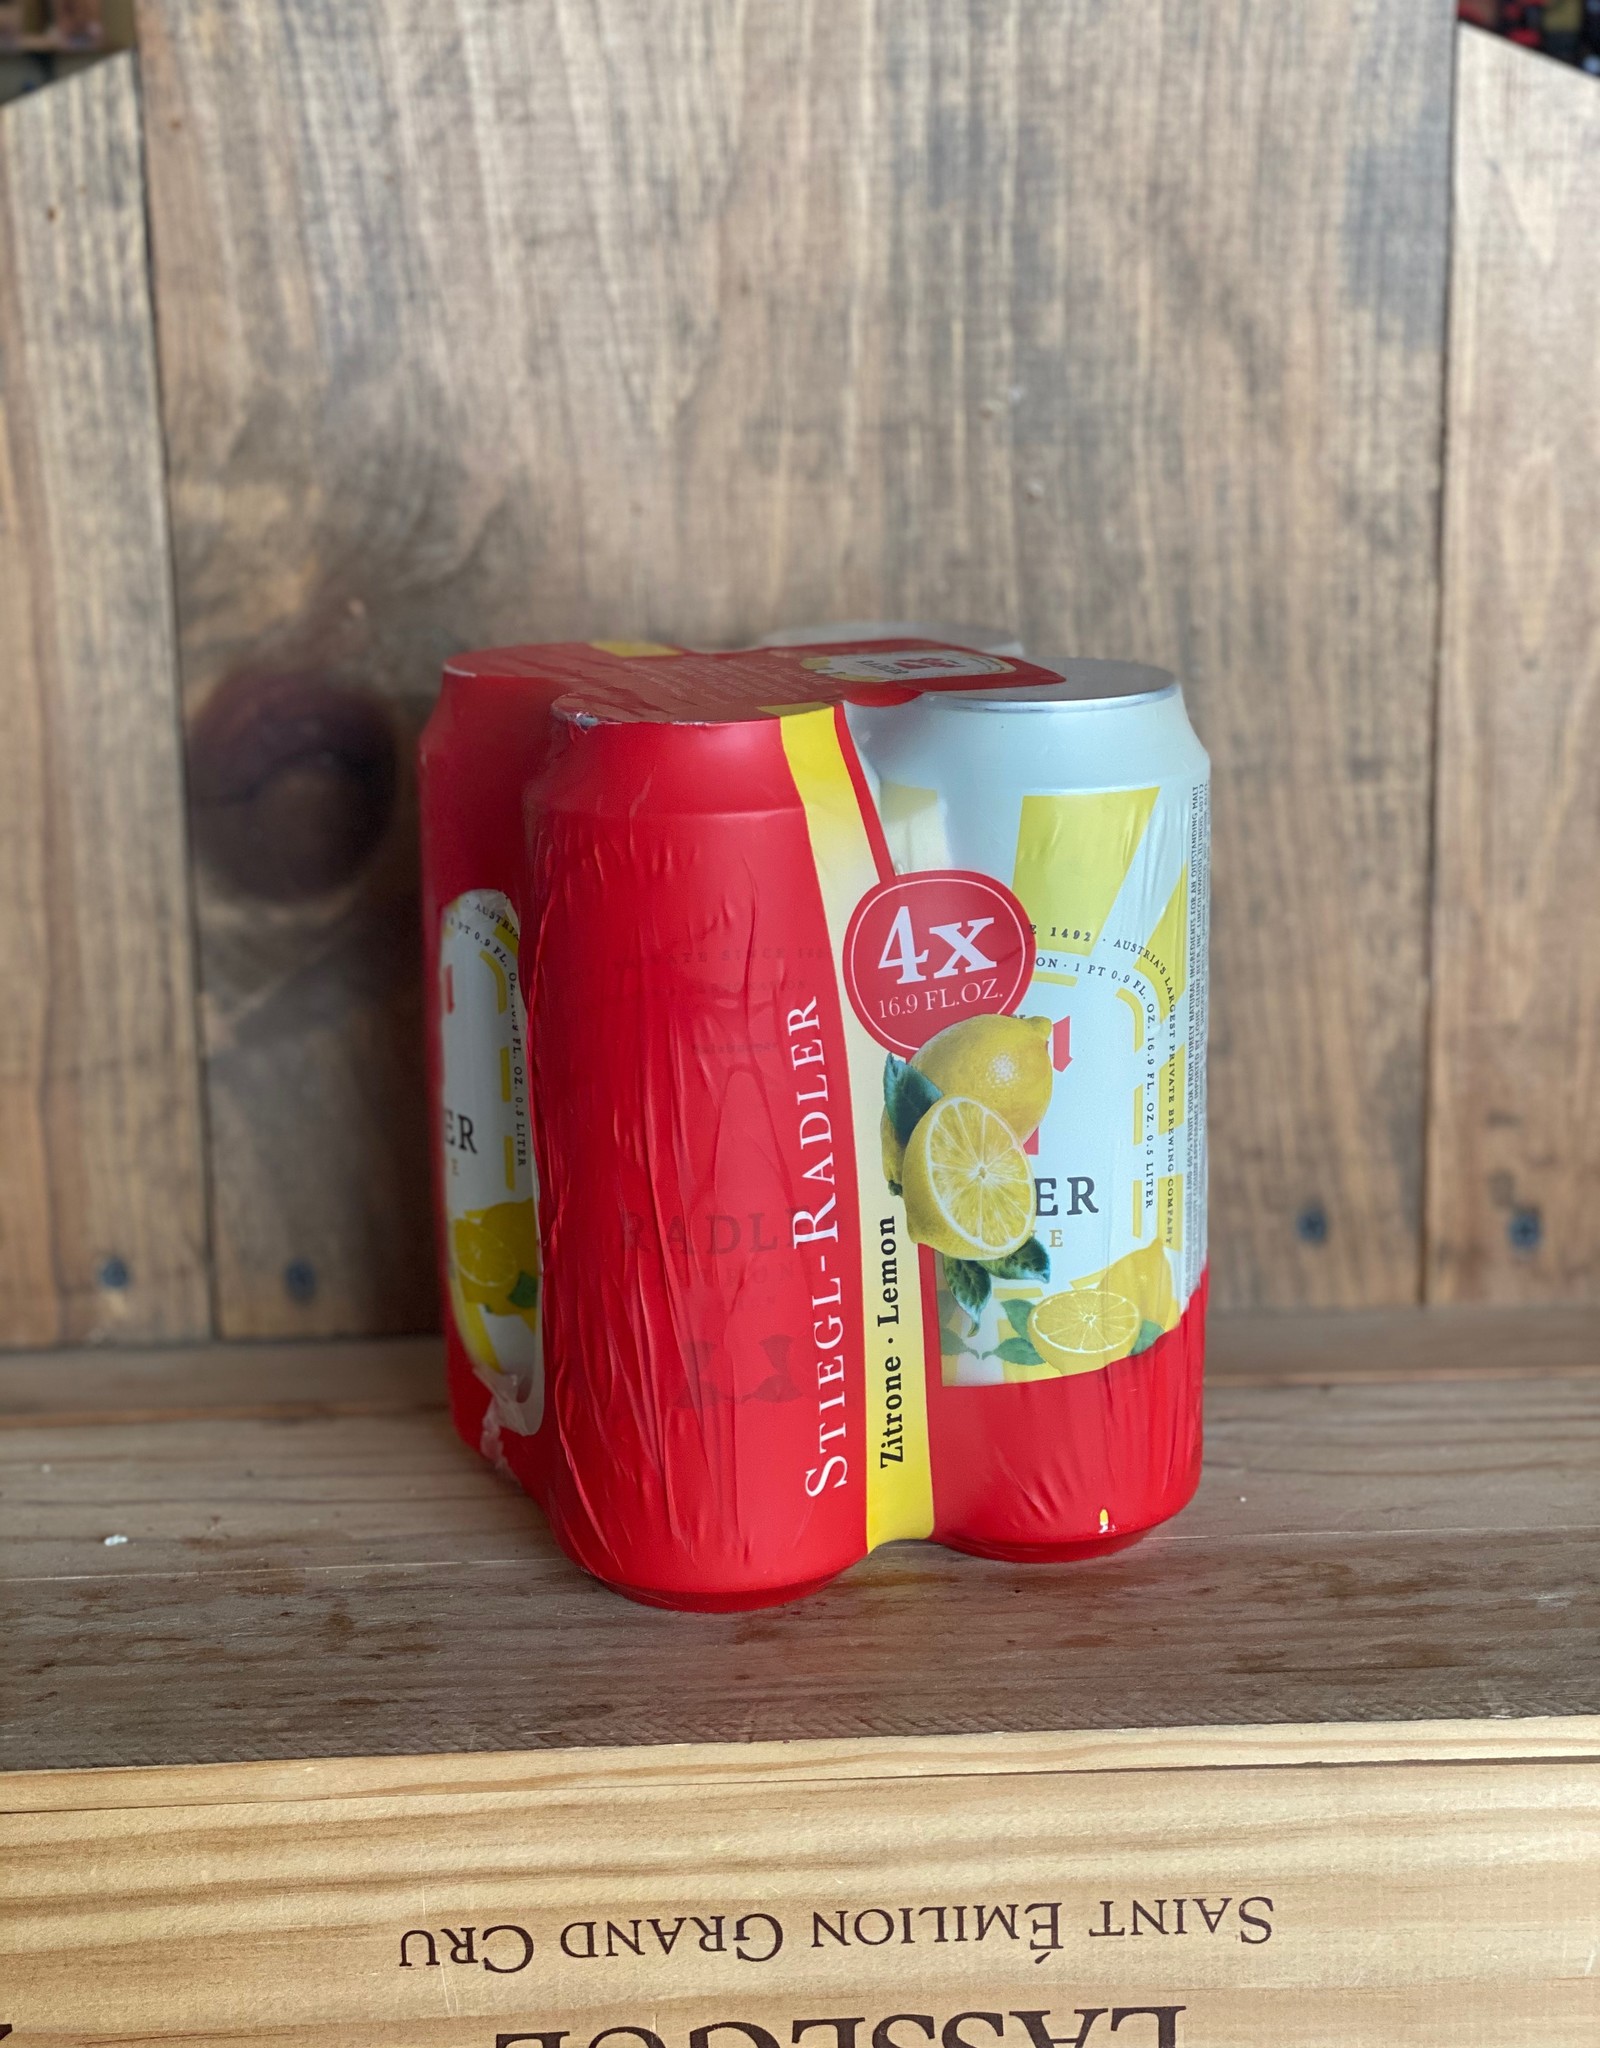 Stiegl Radler Lemon 16.9oz Cans 4-pack